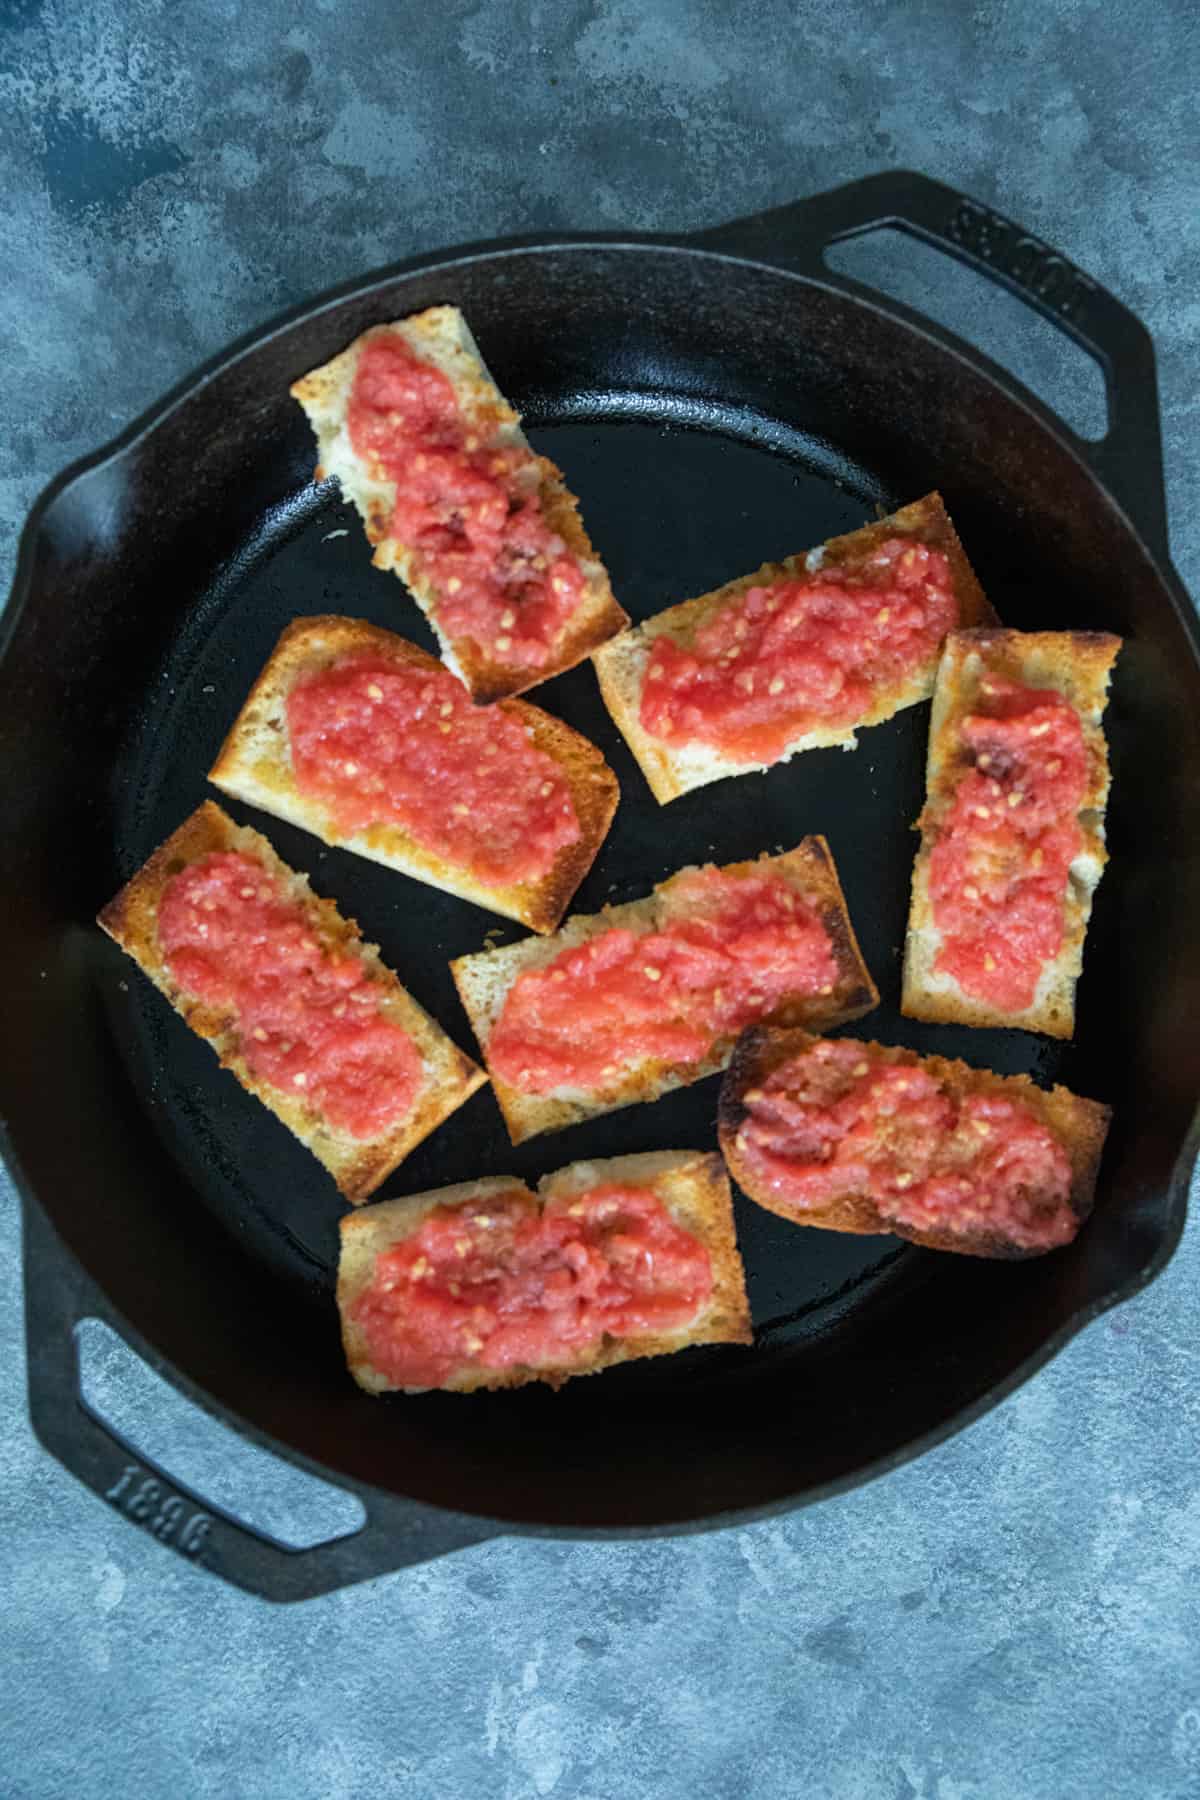 Spanish tomato bread in a cast iron skillet. 